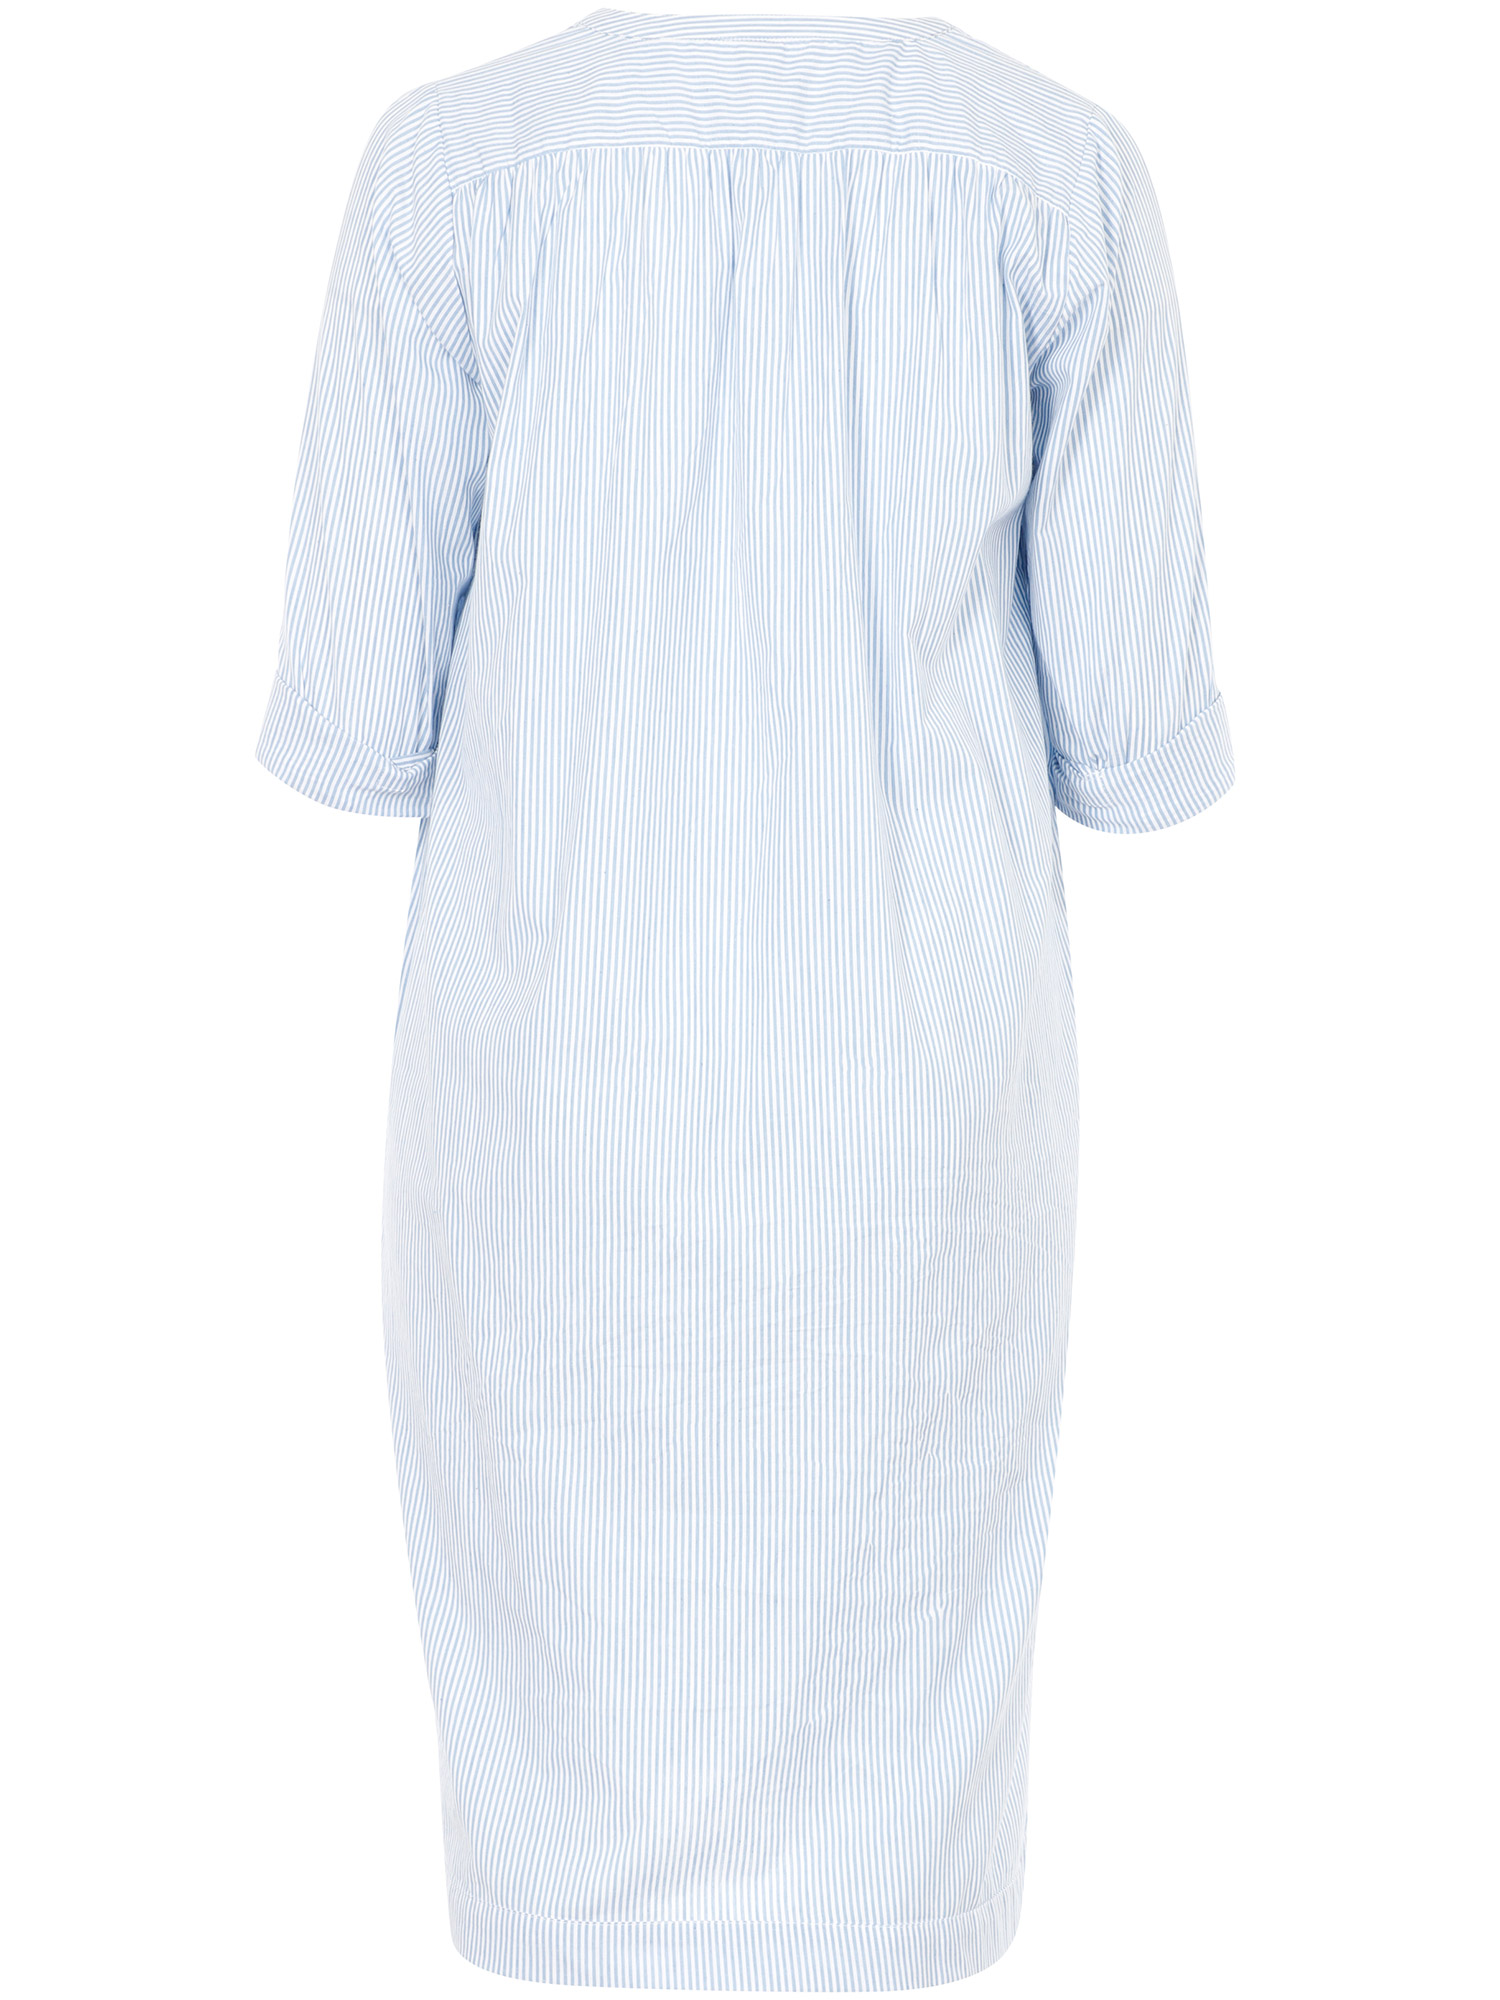 bomulls kjole med hvite og blå striper fra Adia